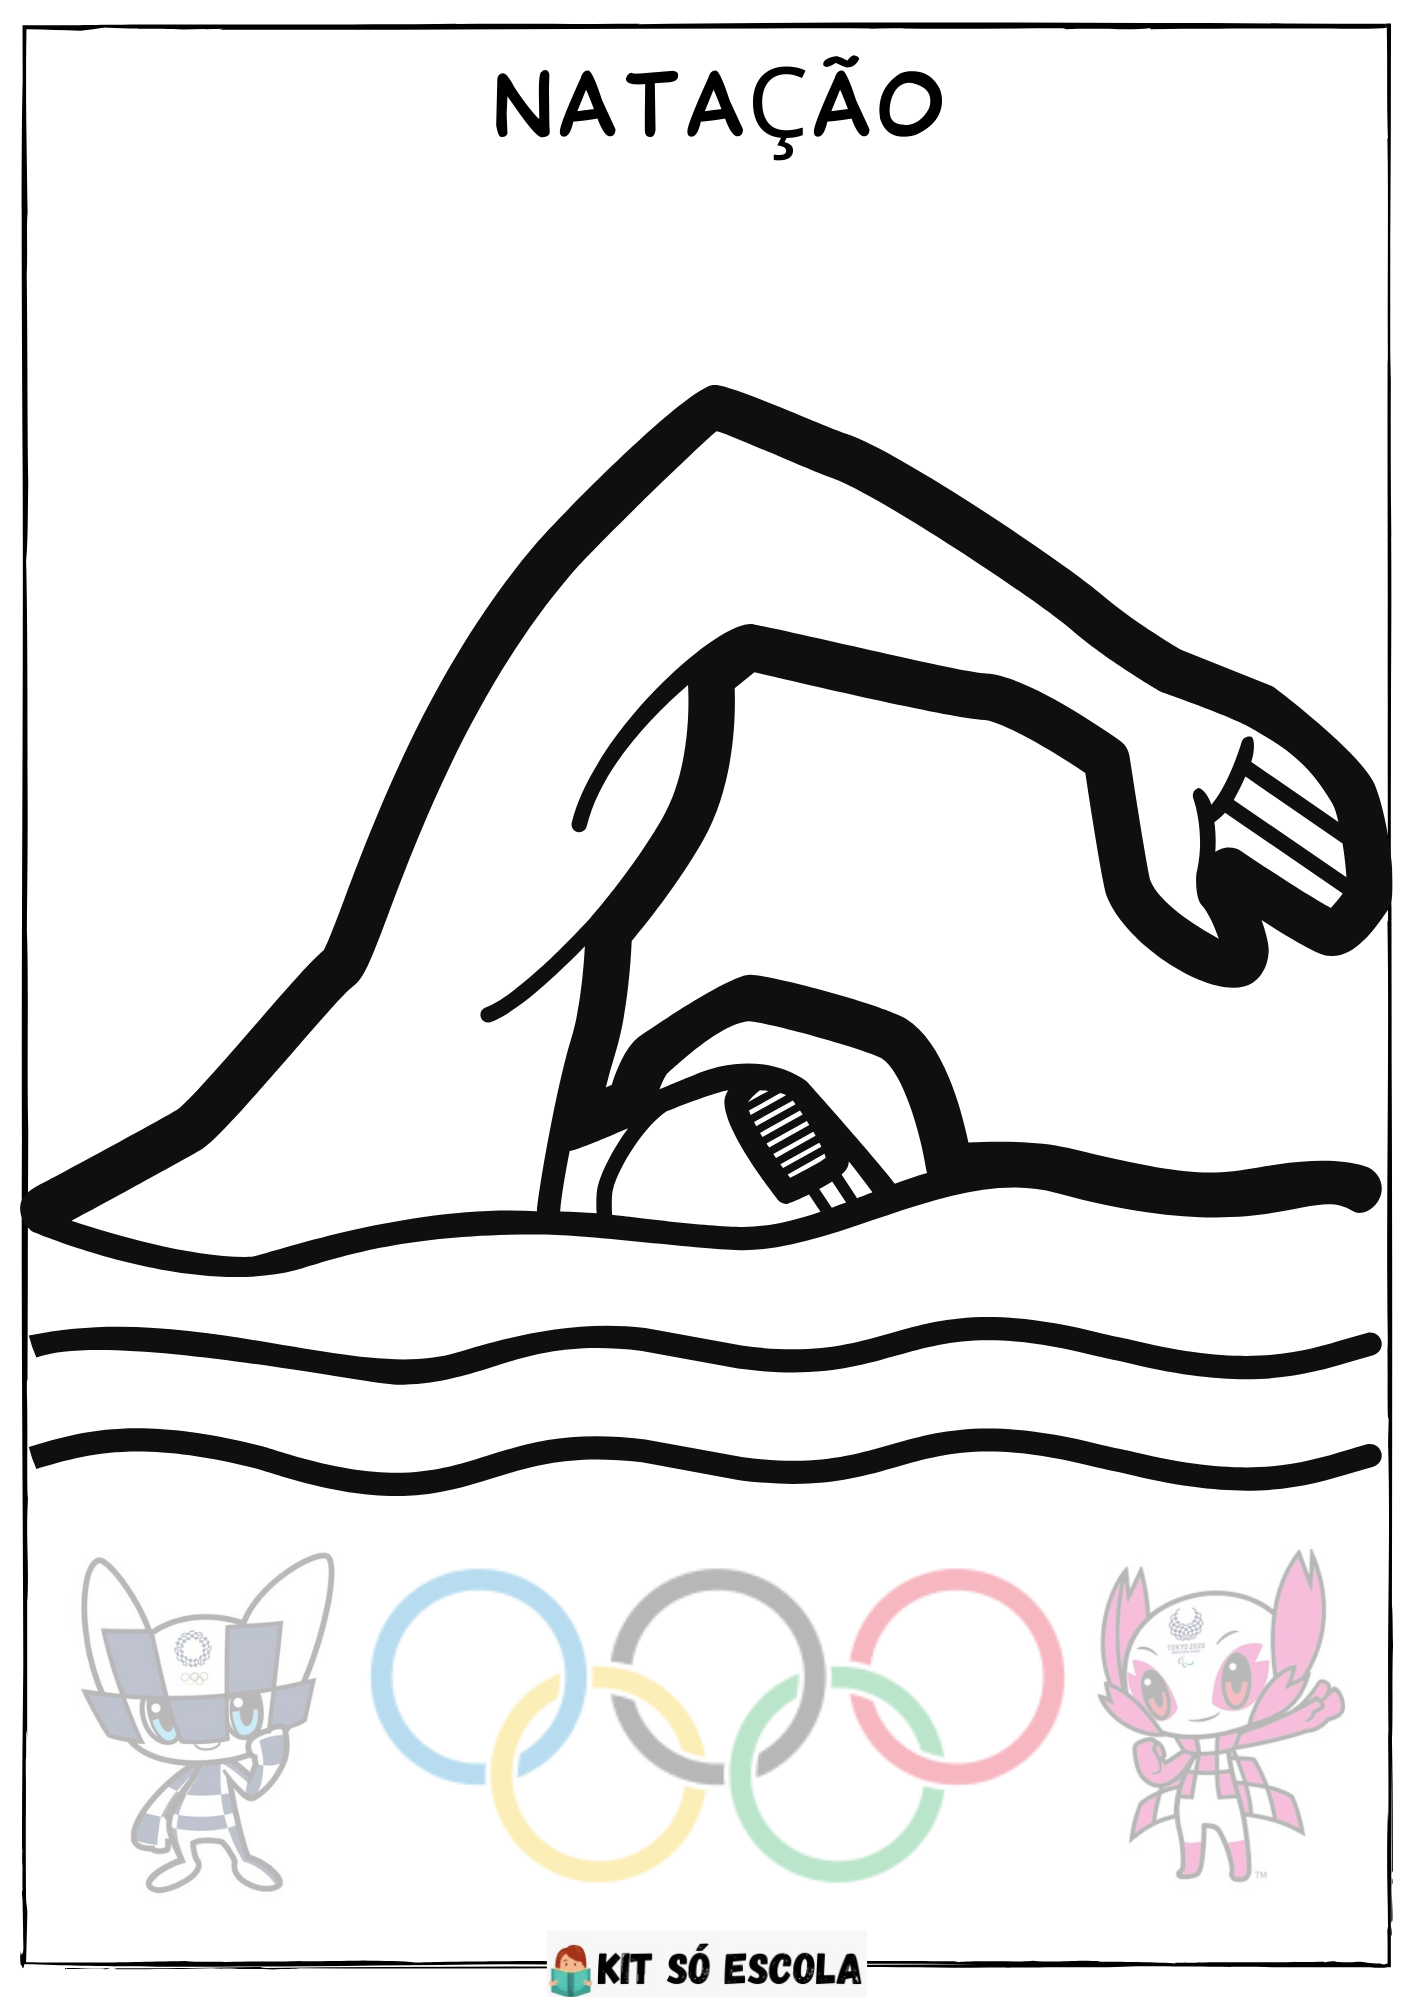 Jogos Olímpicos novos desenhos para imprimir colorir e pintar